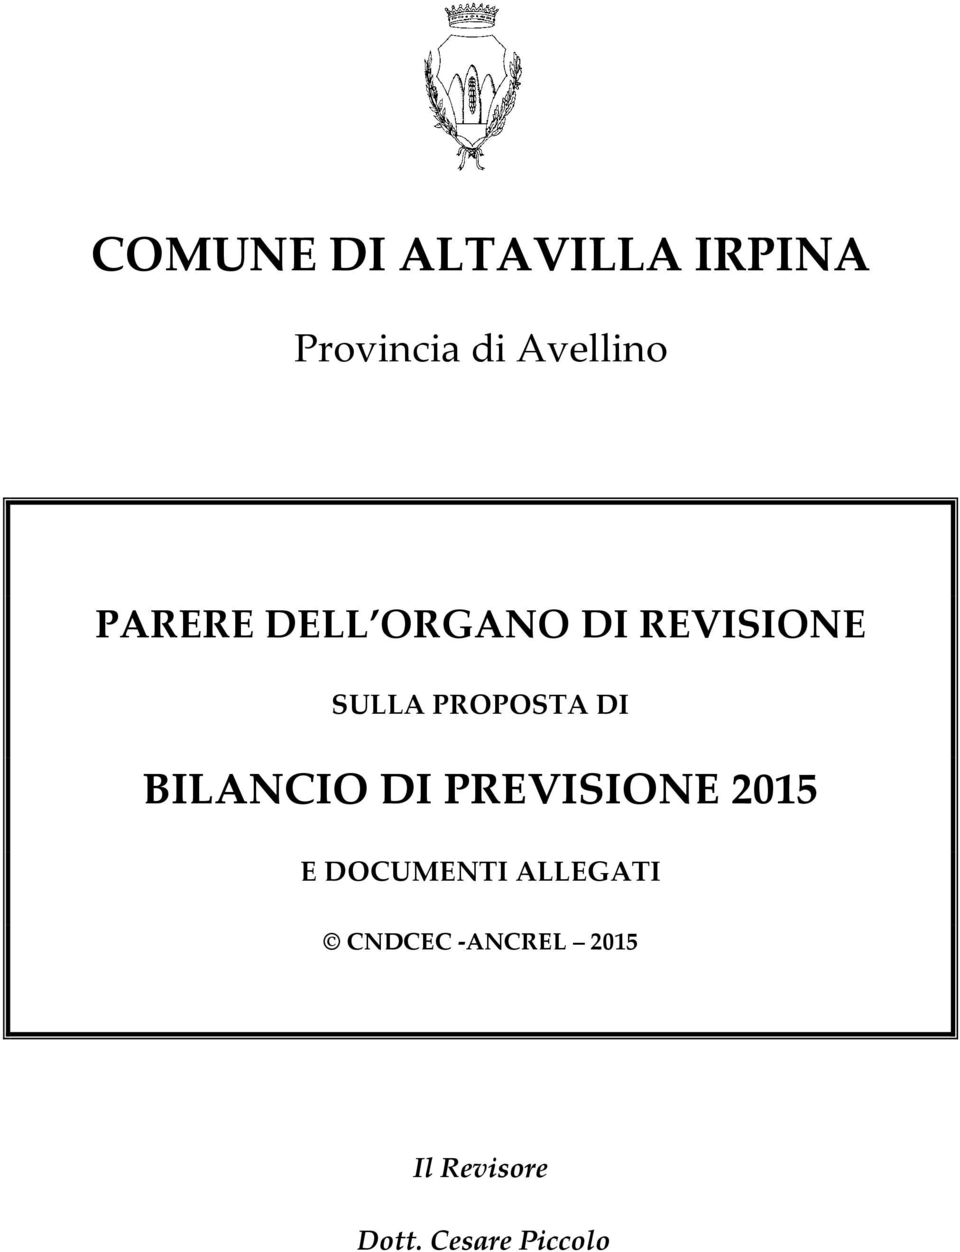 BILANCIO DI PREVISIONE 2015 E DOCUMENTI ALLEGATI